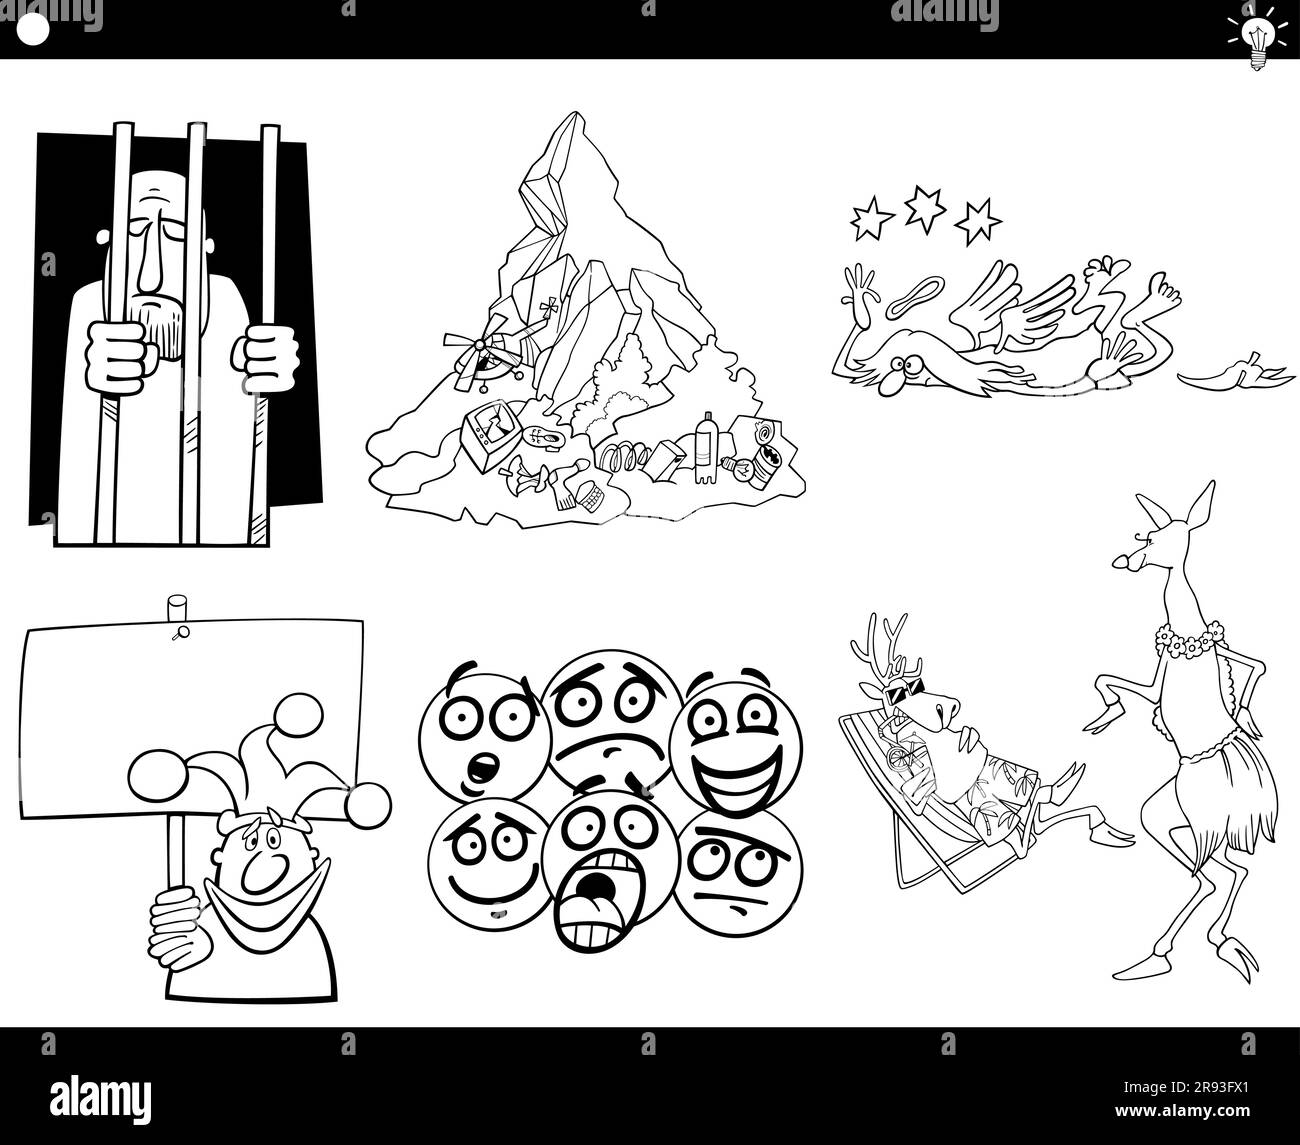 Illustrationen mit humorvollen Zeichentrickkonzepten oder Metaphern oder Sprichwörtern mit Comic-Charakteren Stock Vektor